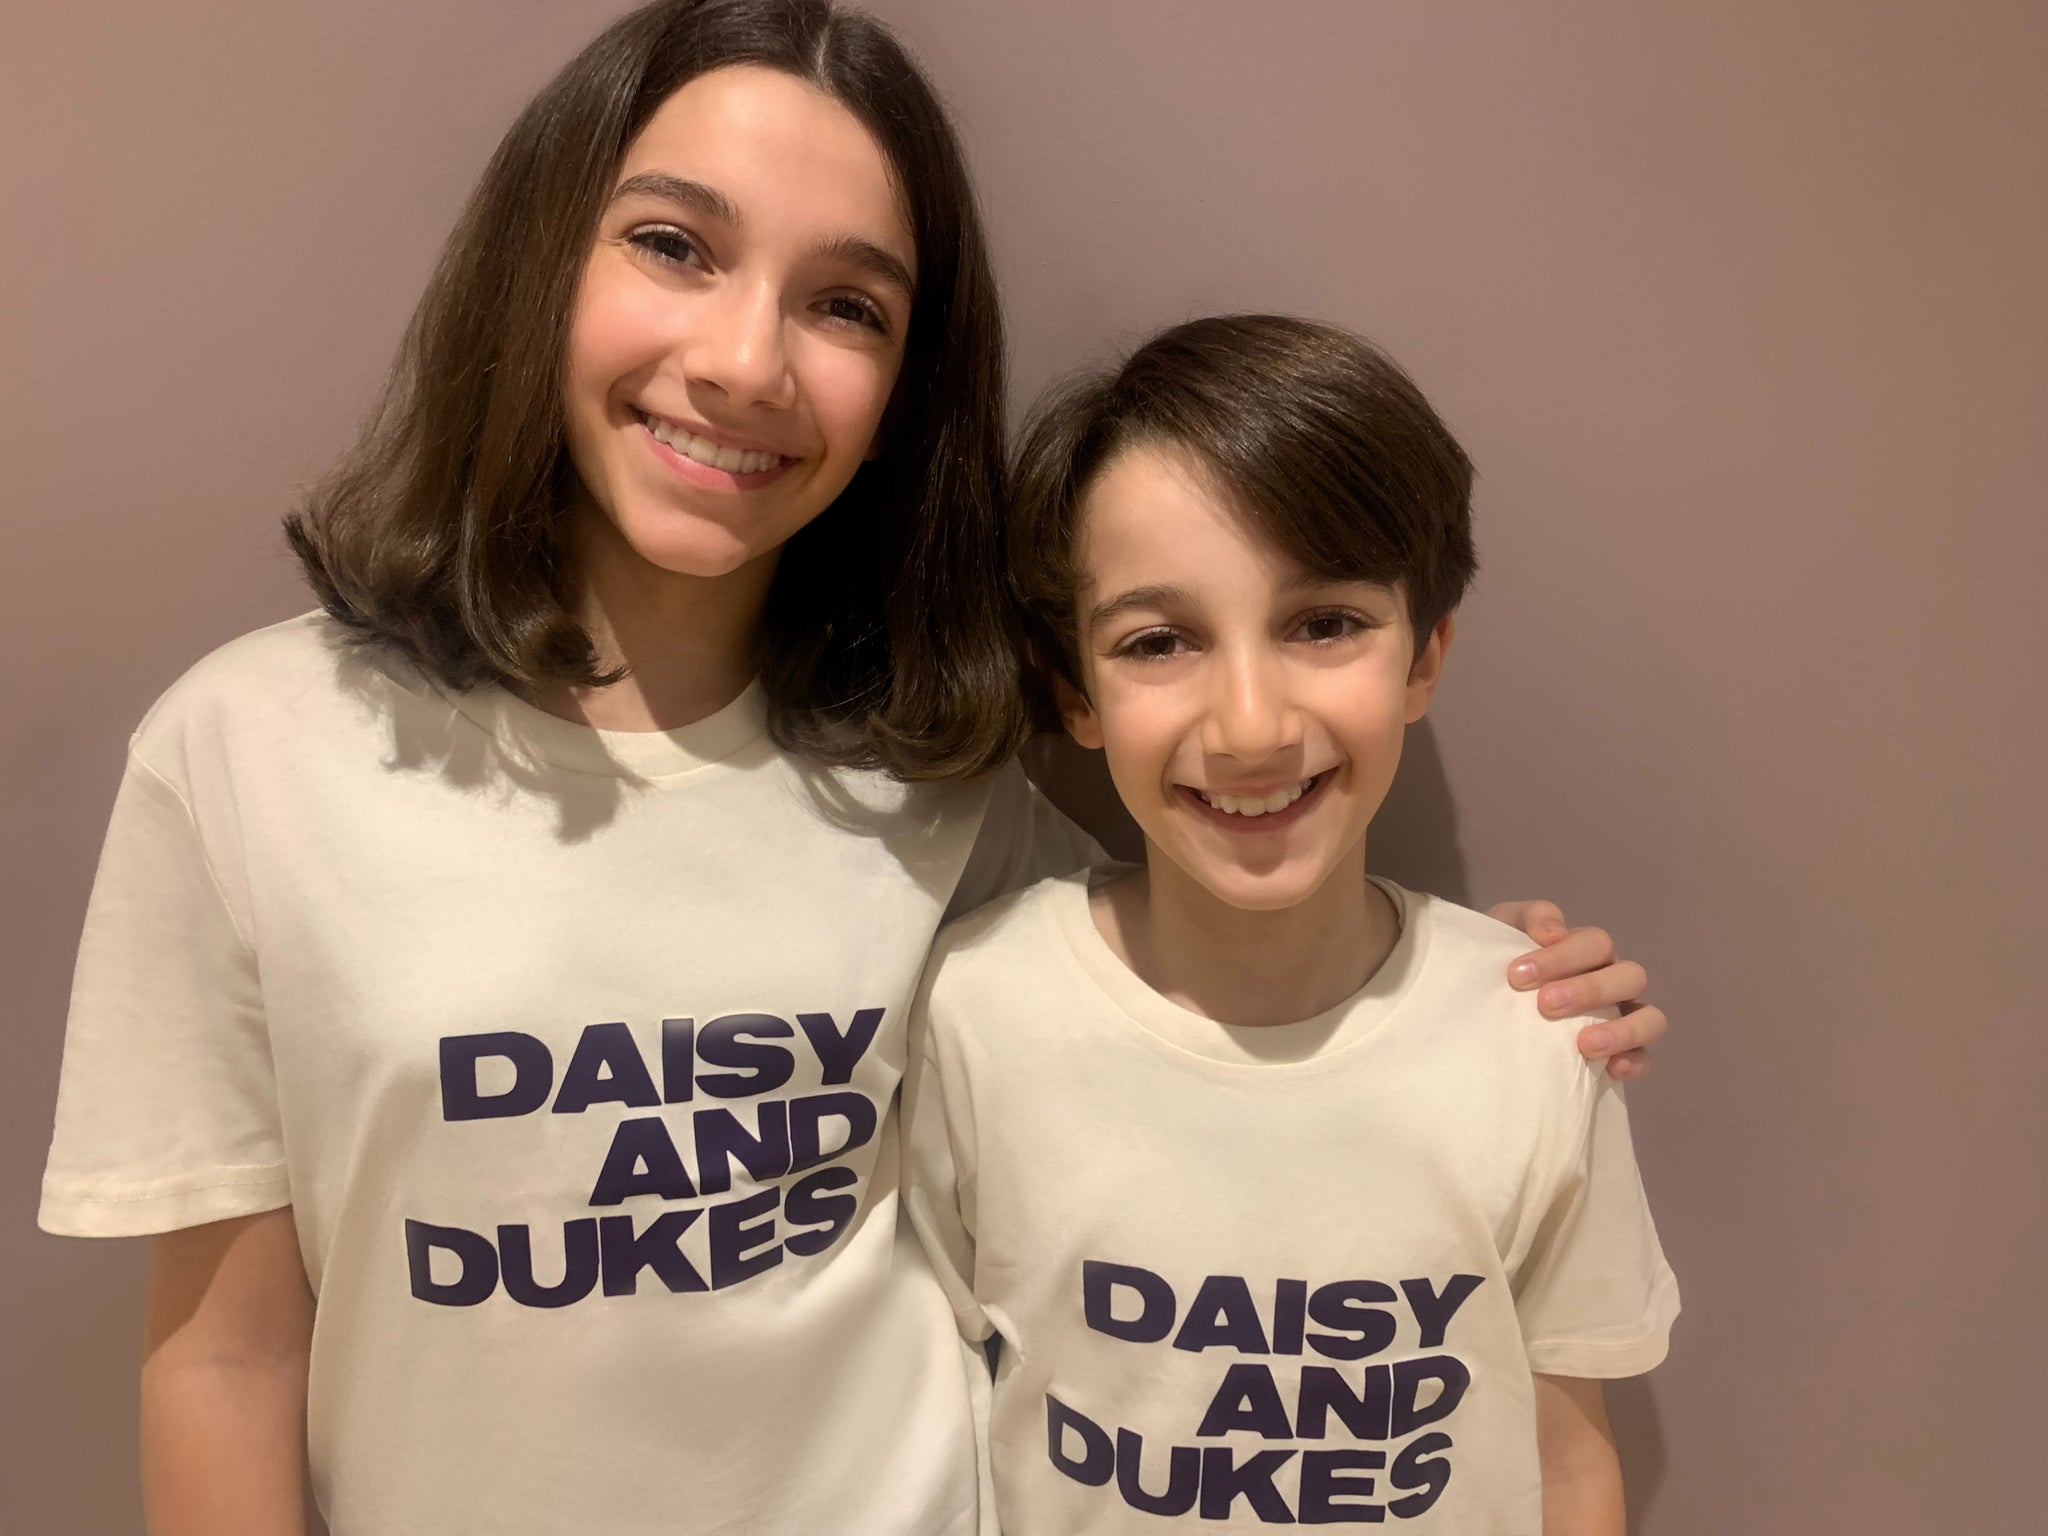 Daisy & Dukes T-Shirt